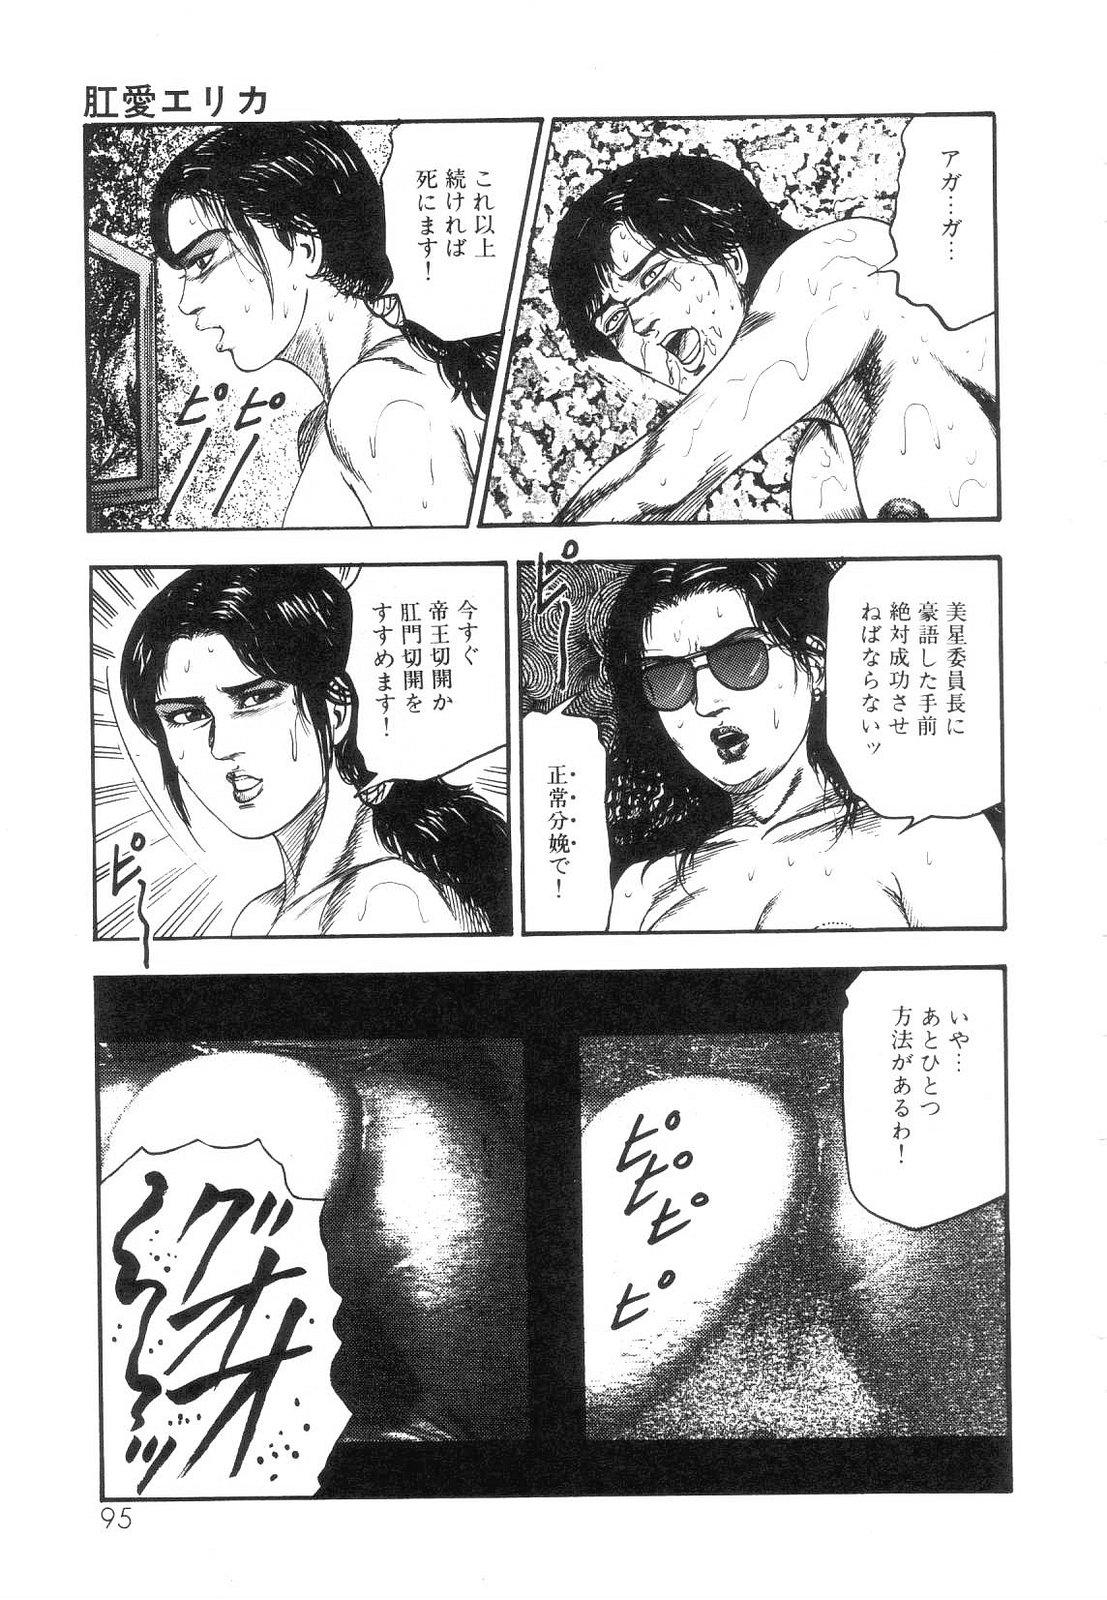 Shiro no Mokushiroku Vol. 5 - Ninshoujo Erika no Shou 96